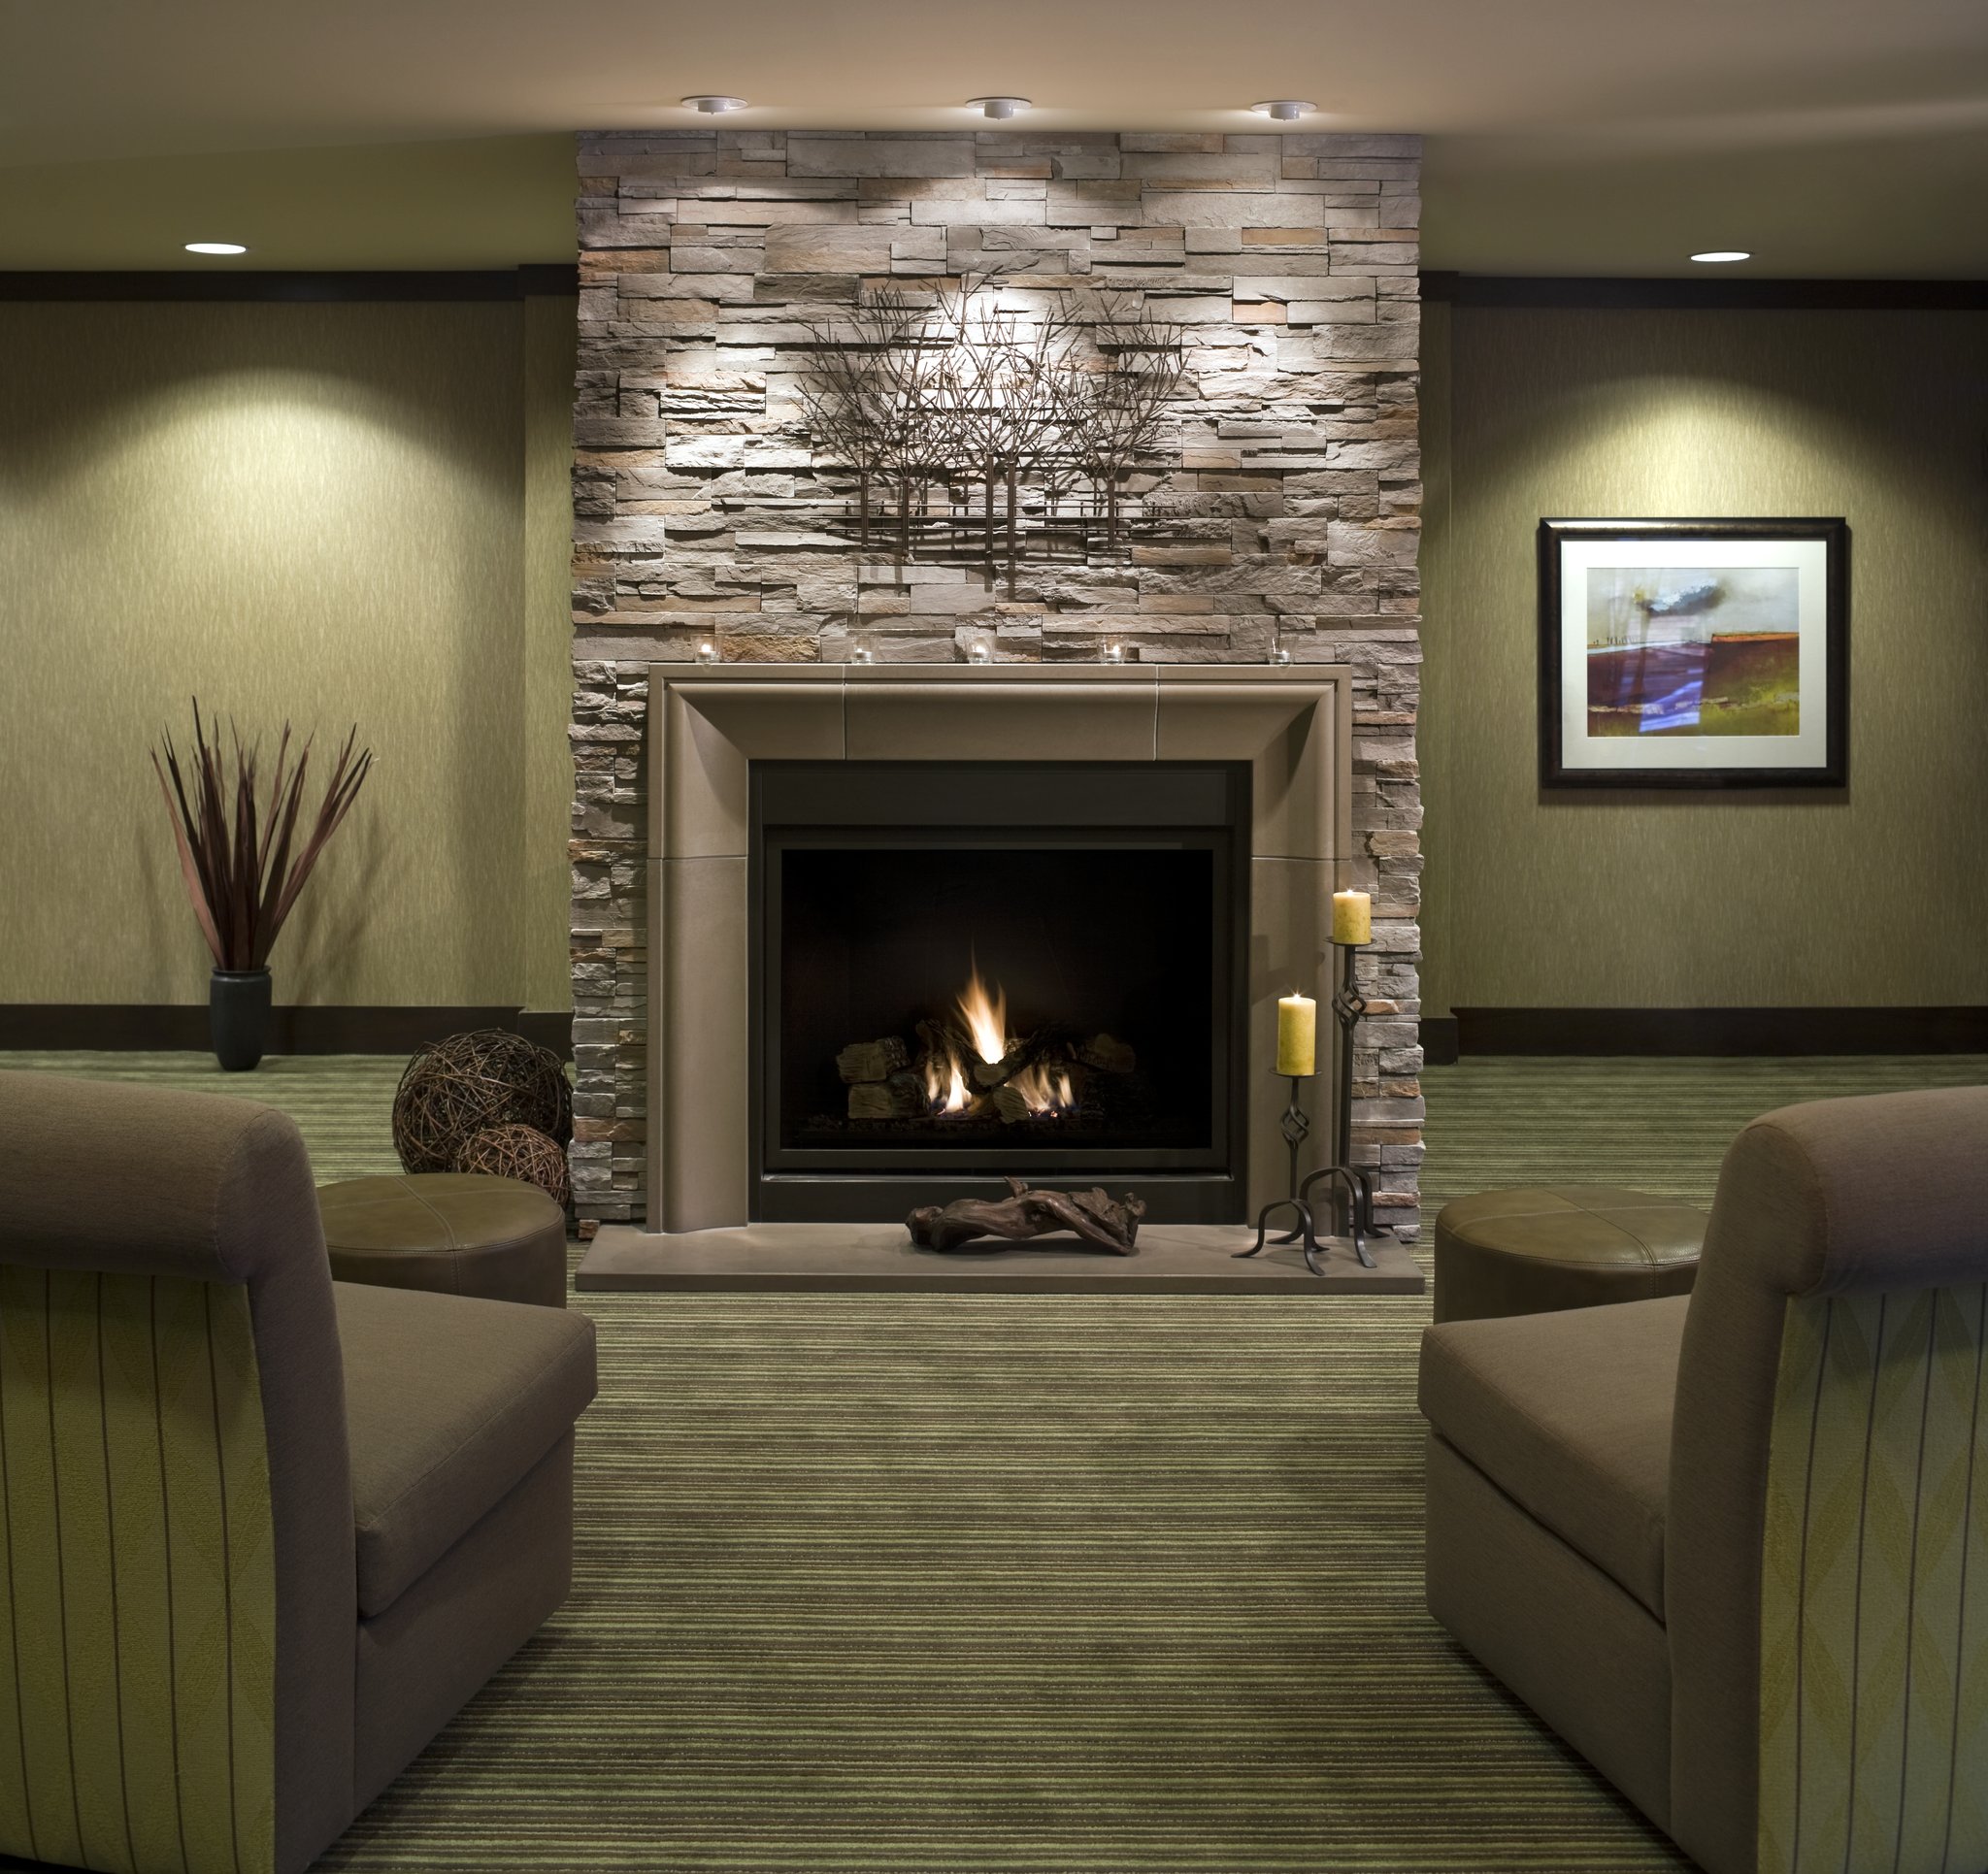 Executive Suites Hotel & Resort, Squamish